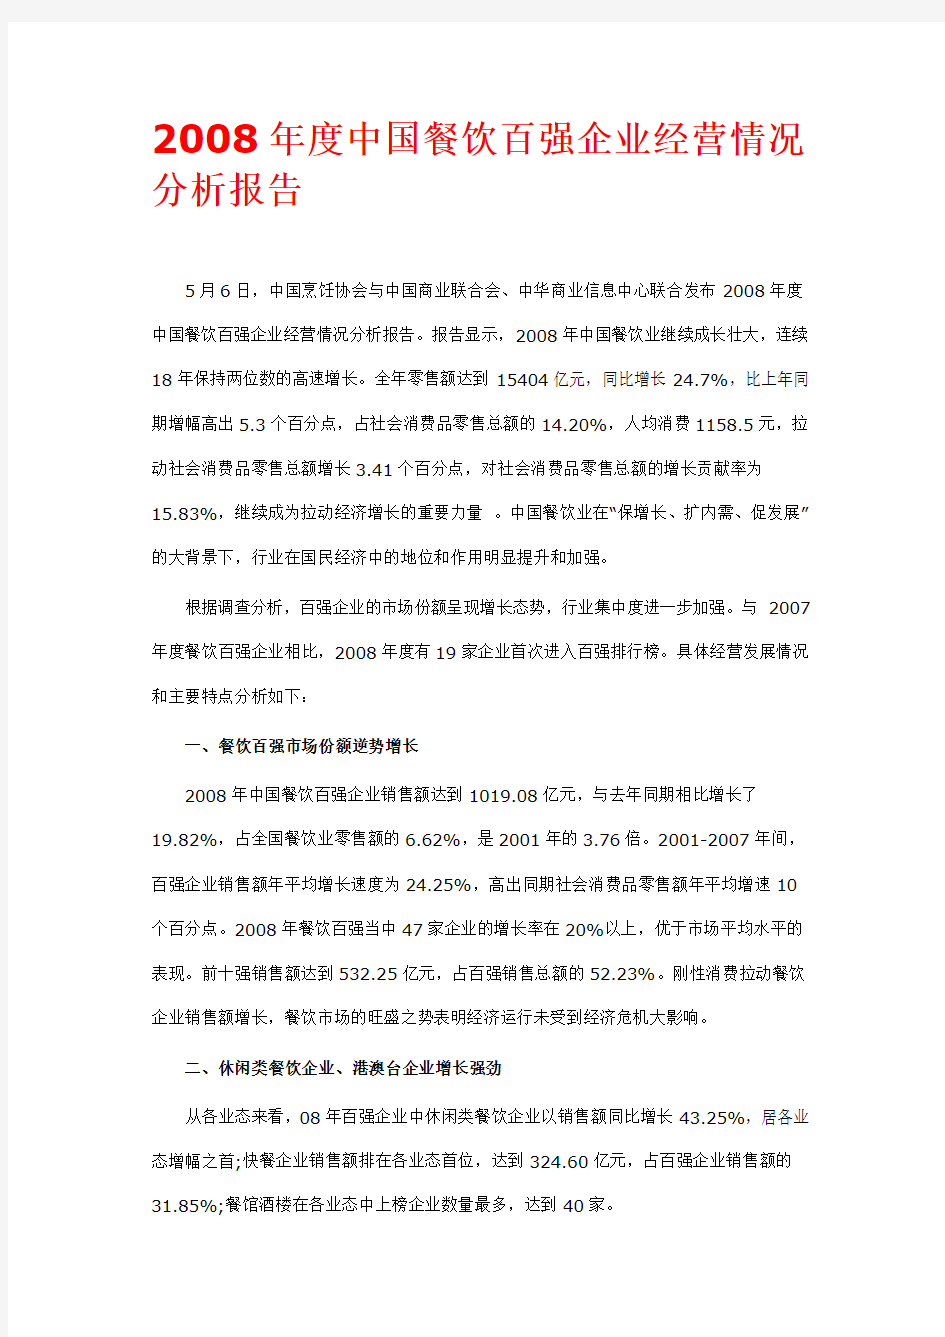 二零零八年度中国餐饮百强企业经营情况分析报告